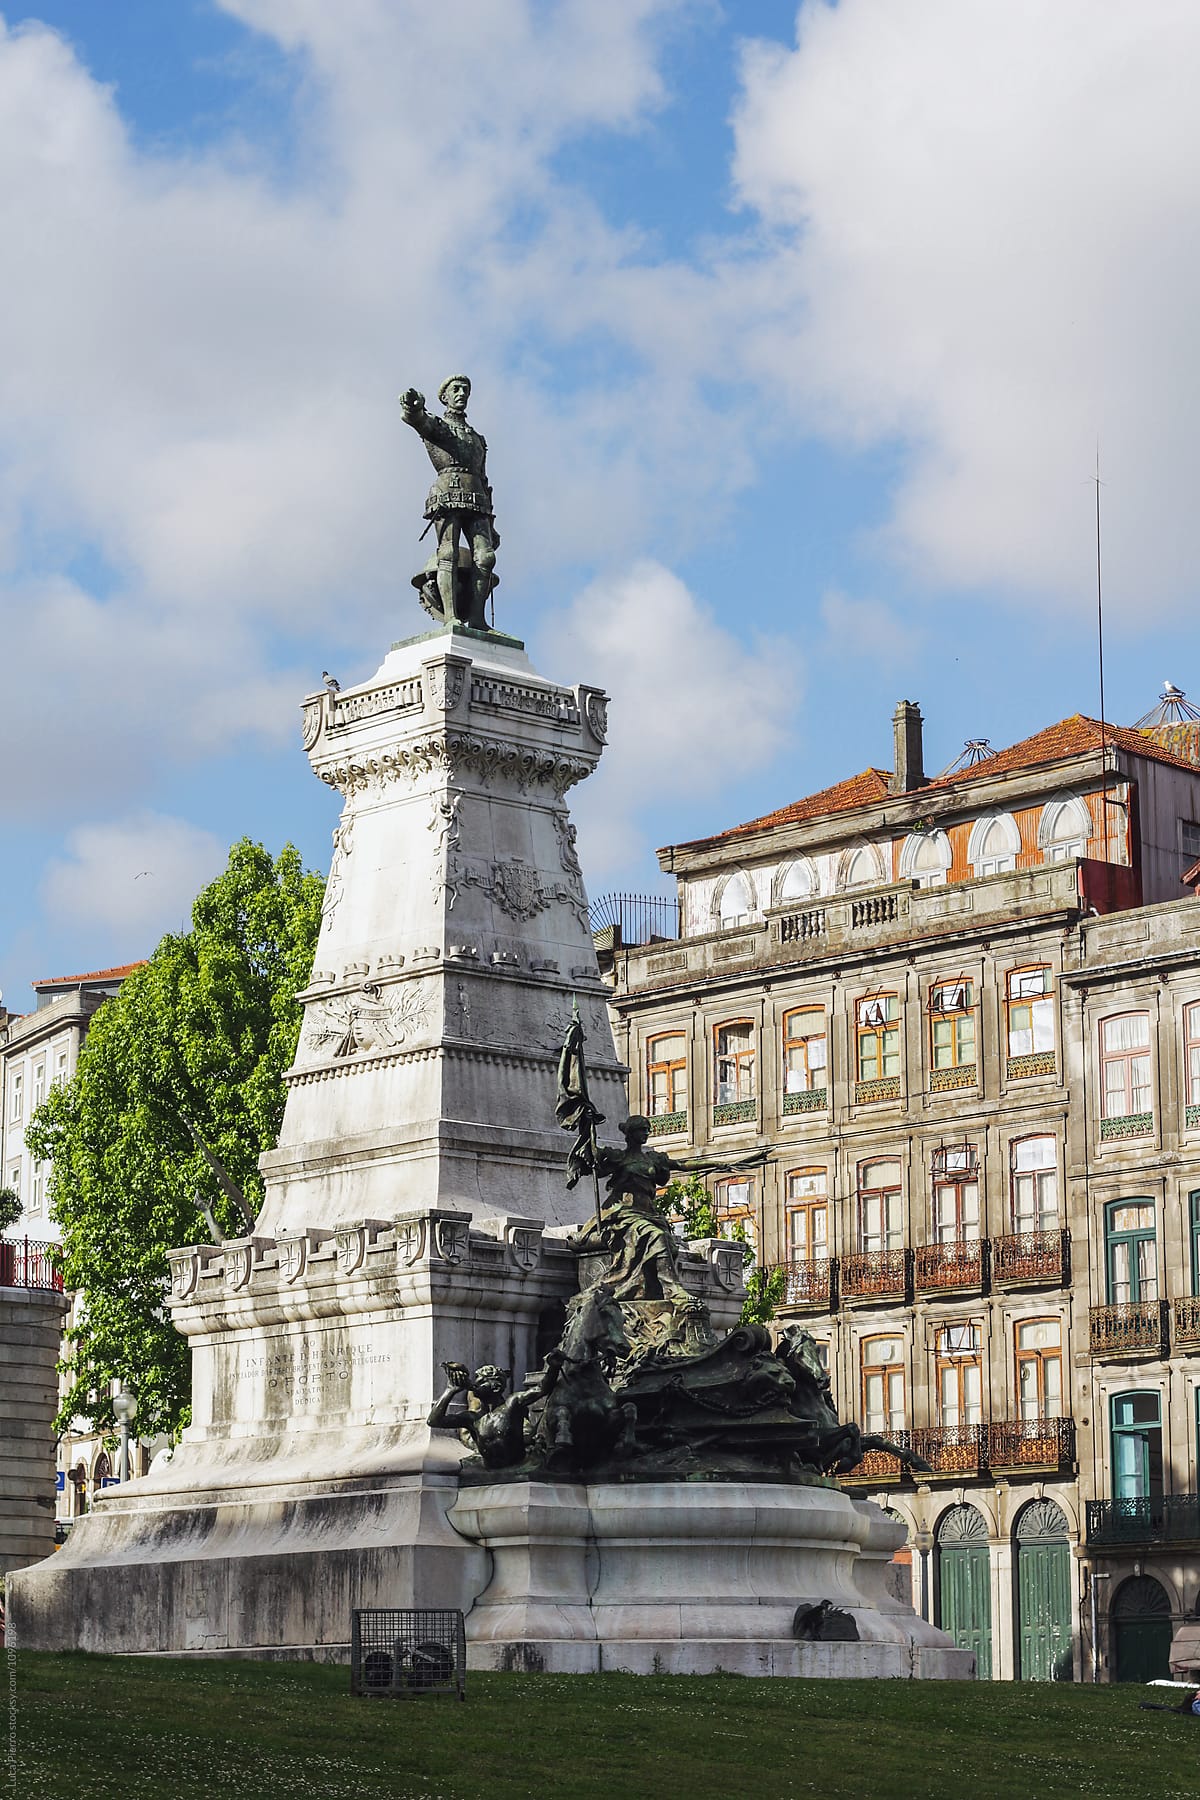 Statue of Don Pedro I in Porto, Portugal